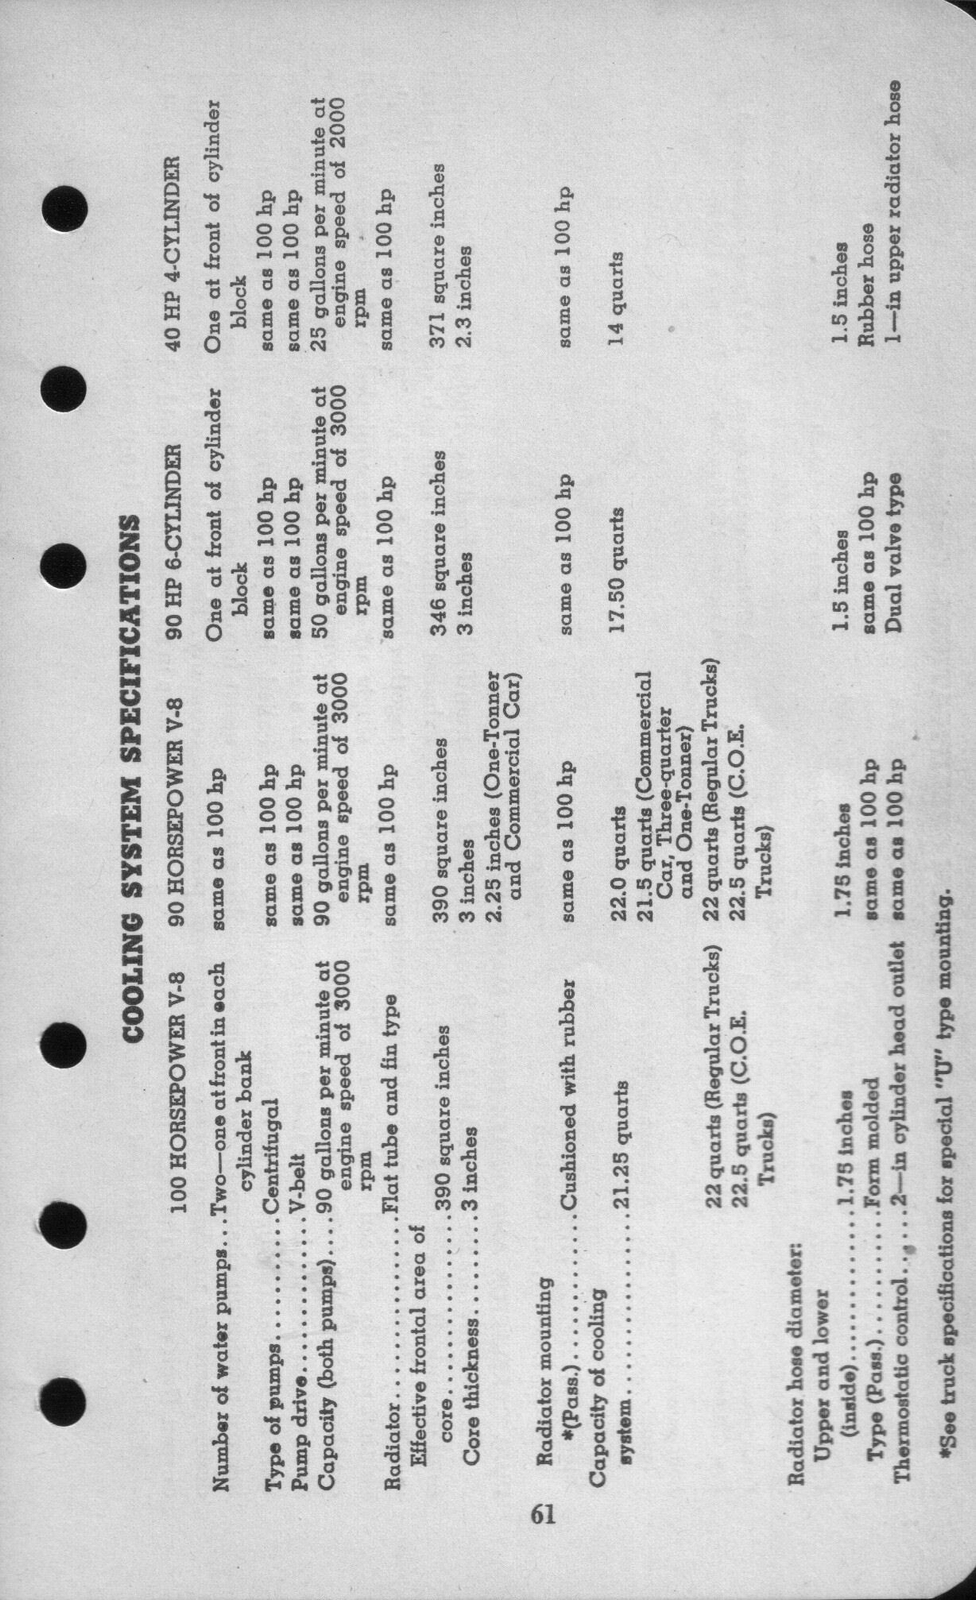 n_1942 Ford Salesmans Reference Manual-061.jpg